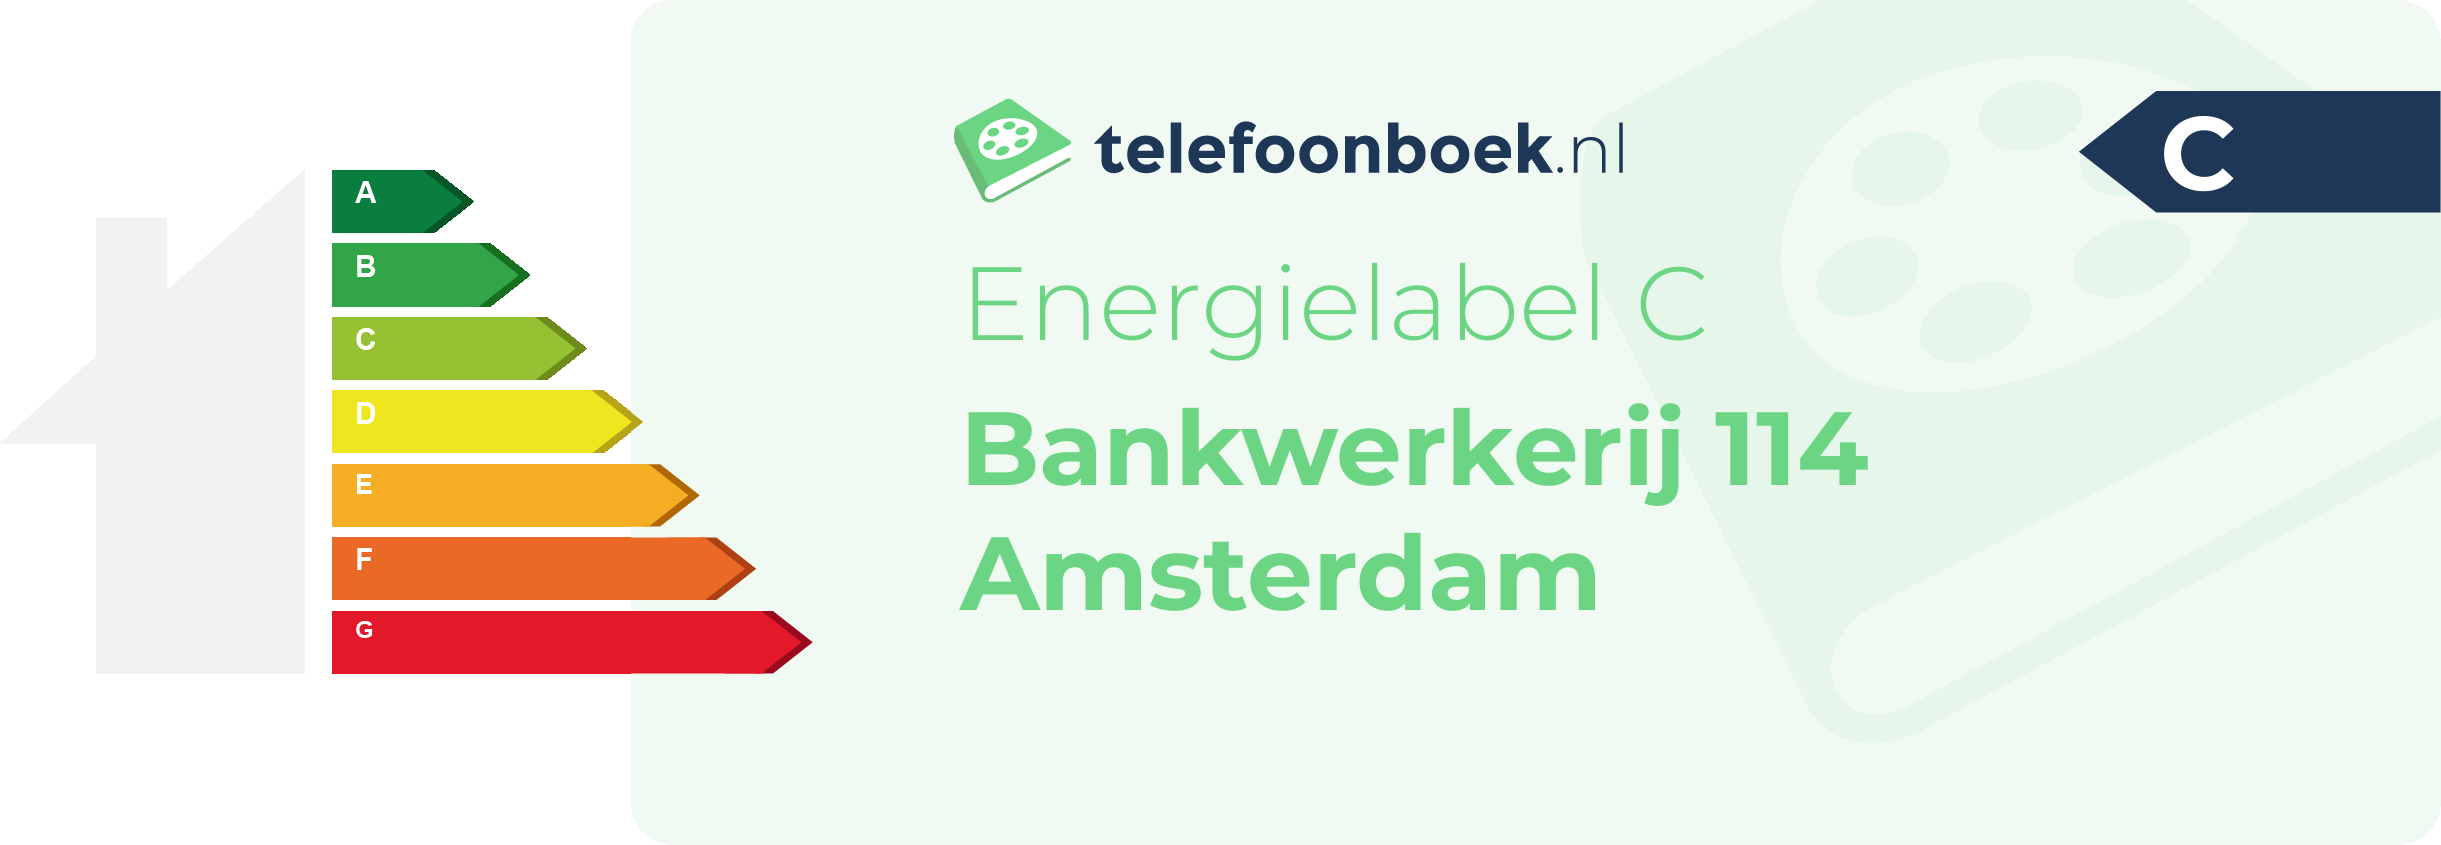 Energielabel Bankwerkerij 114 Amsterdam